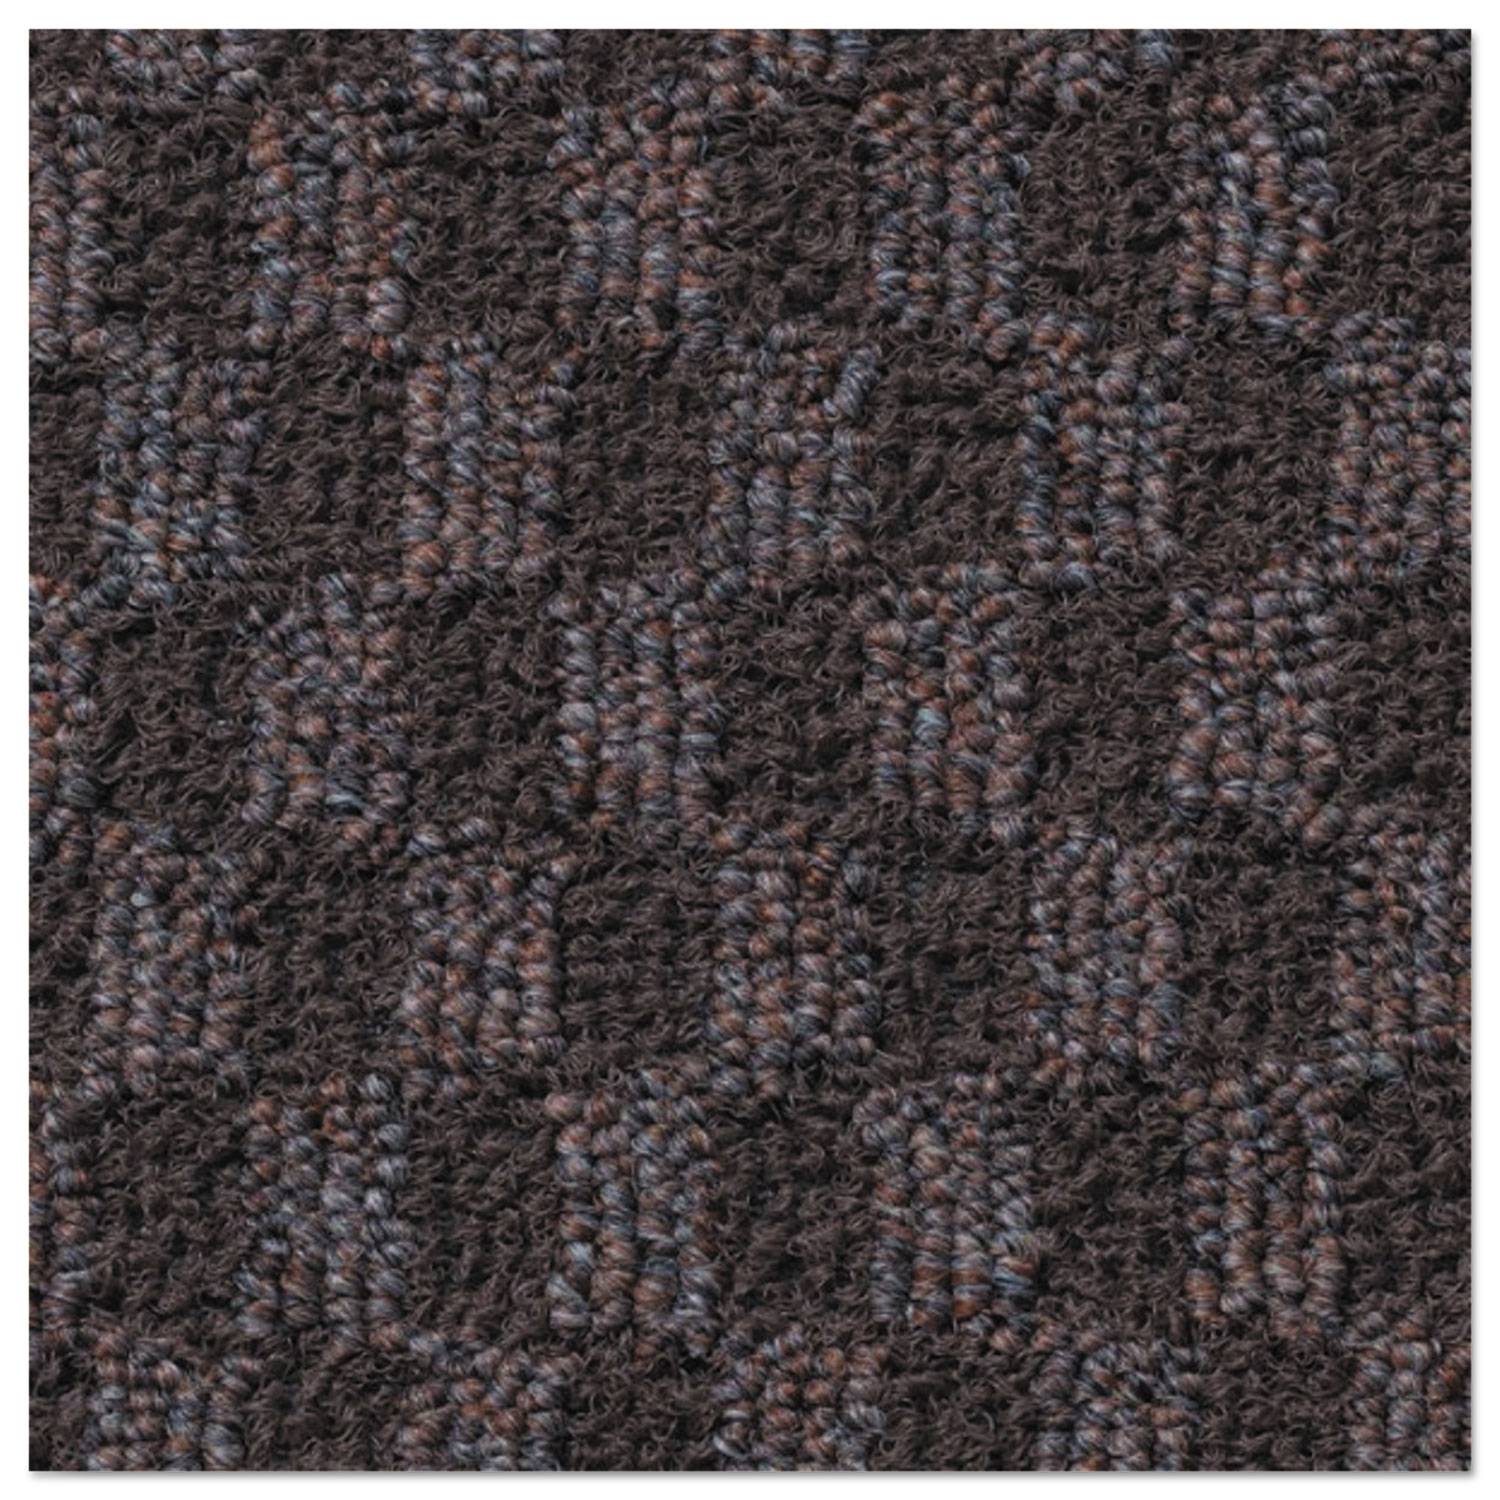 Nomad 6500 Carpet Matting, Polypropylene, 36 x 120, Brown